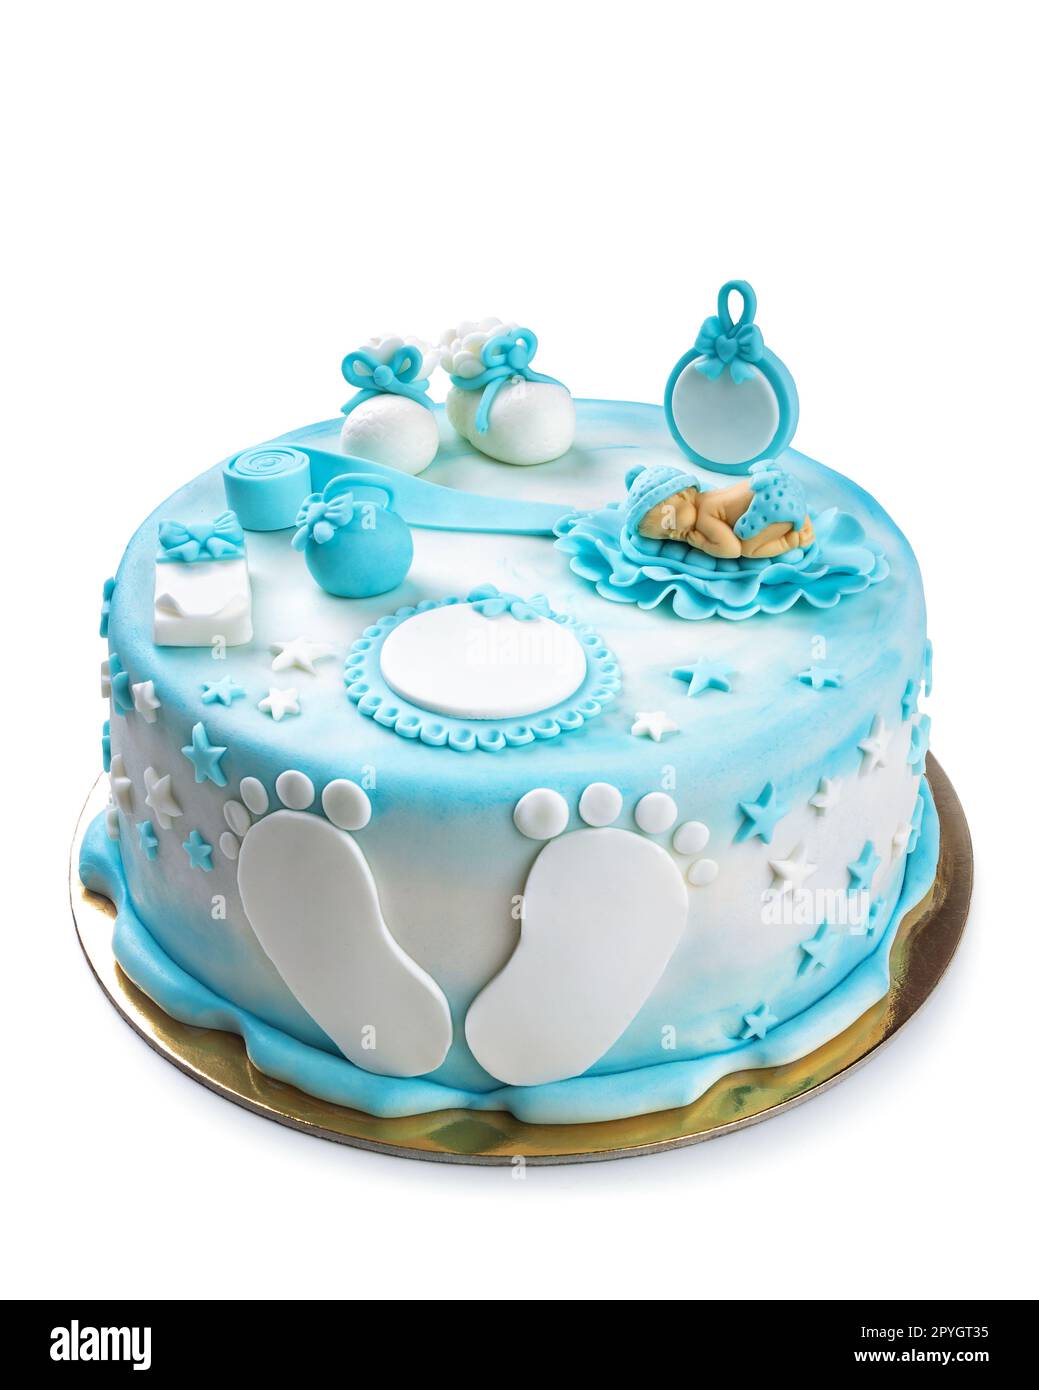 Gâteau de couleur blanche et bleue pour l'anniversaire d'un bébé Banque D'Images